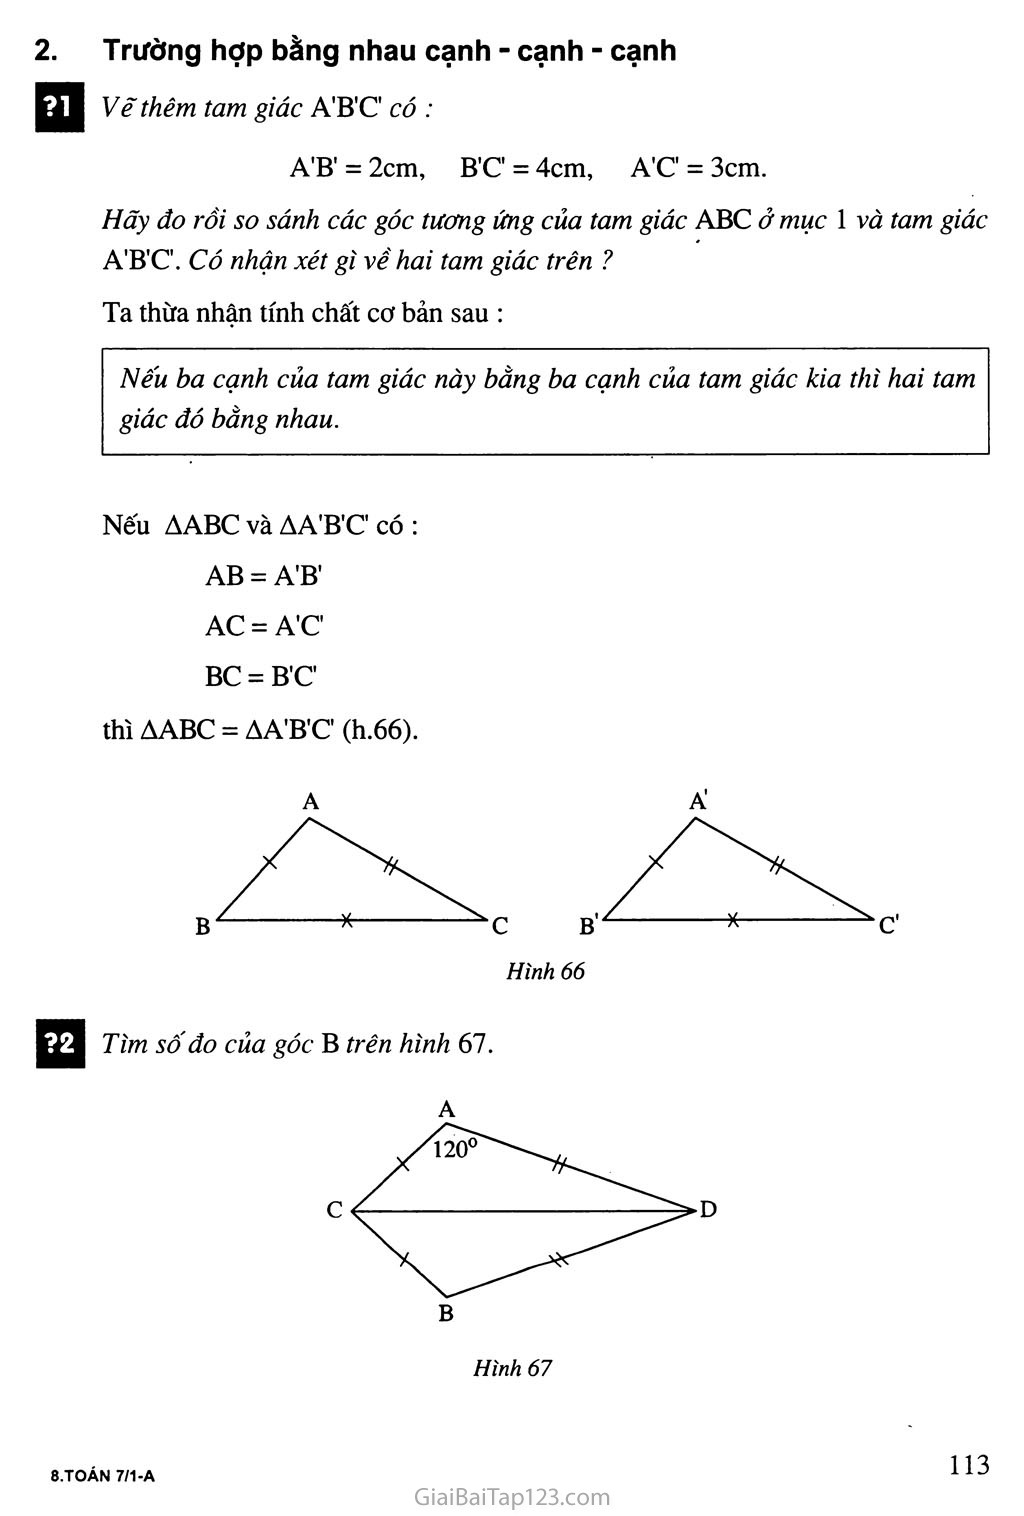 Bài 3. Trường hợp bằng nhau thứ nhất của tam giác: cạnh - cạnh - cạnh (c. c. c) trang 2